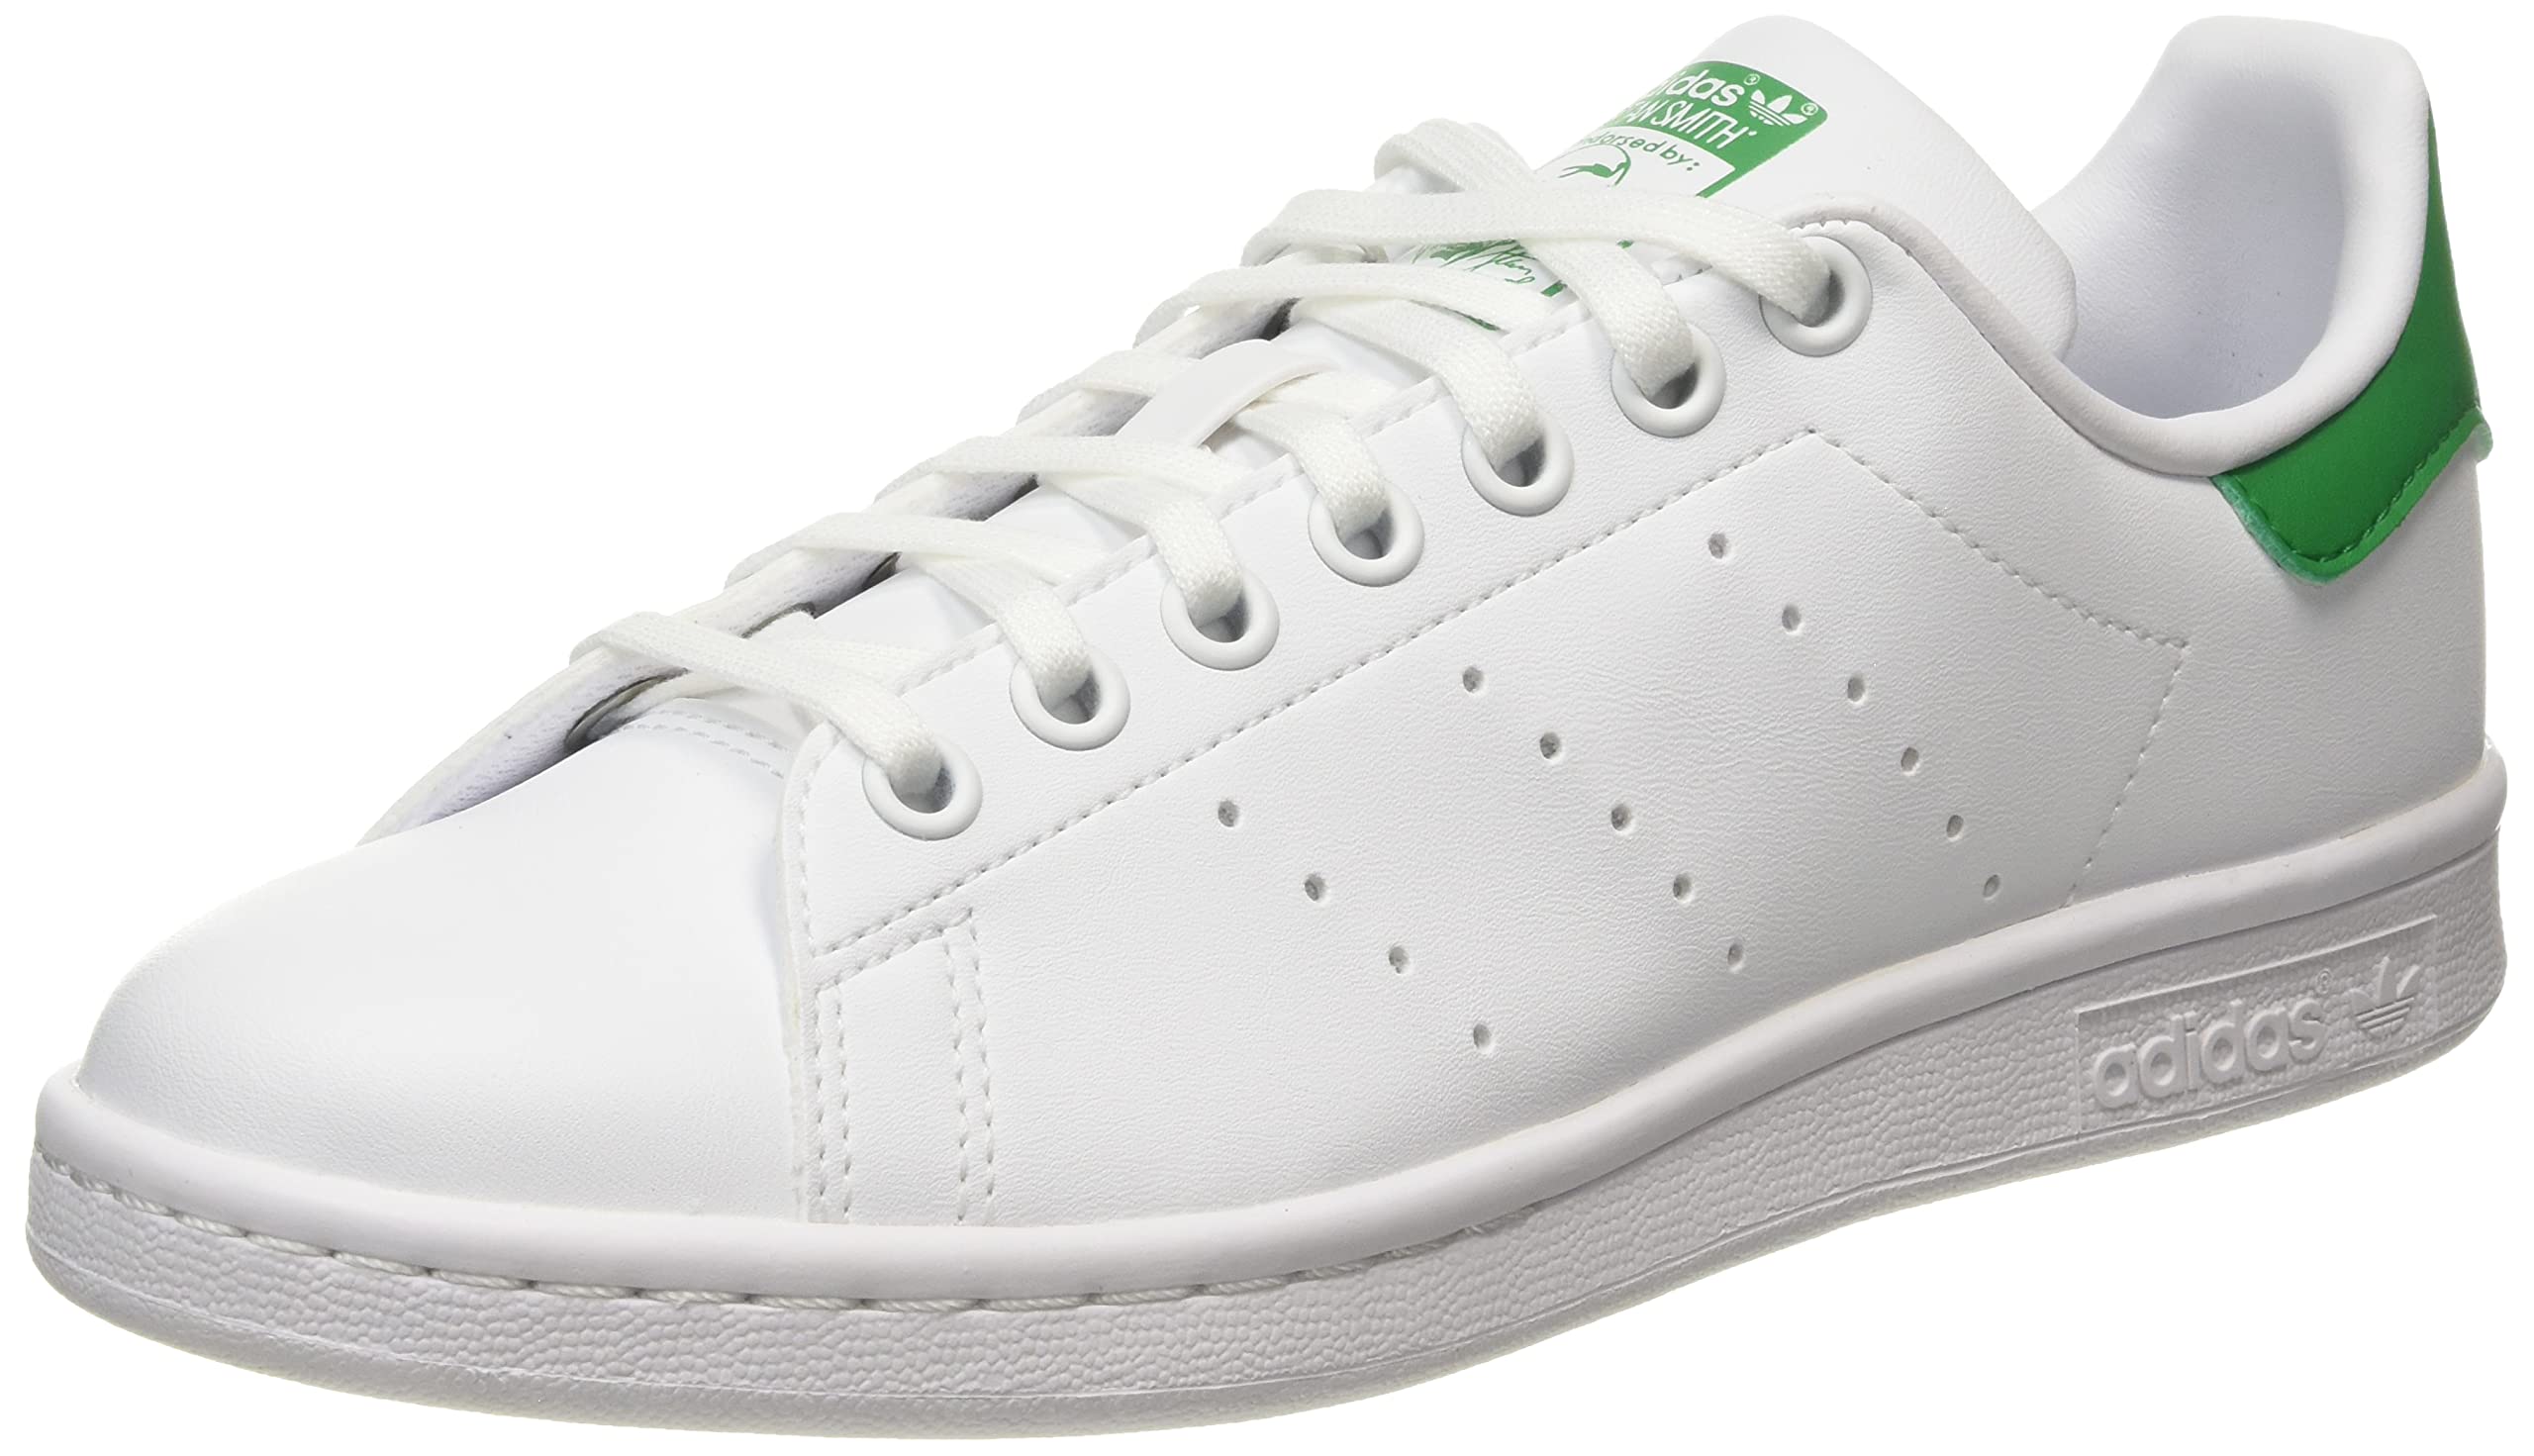 adidas Originals FX7519_35,5 Sneakers, White, 35.5 EU